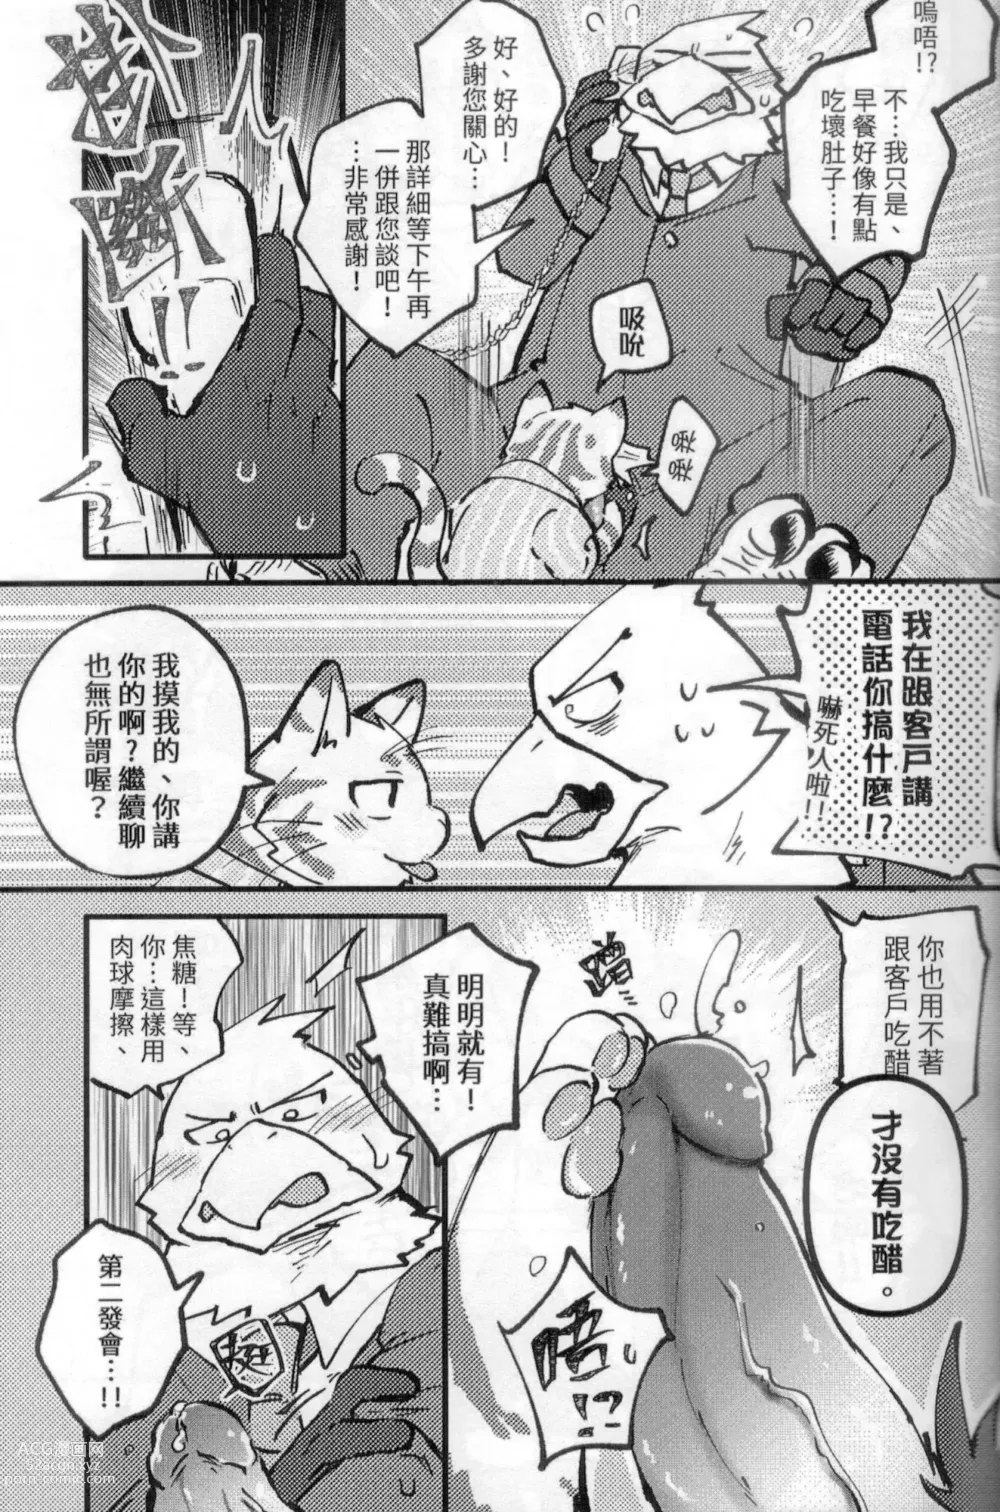 Page 8 of doujinshi 啊就脫掉吧